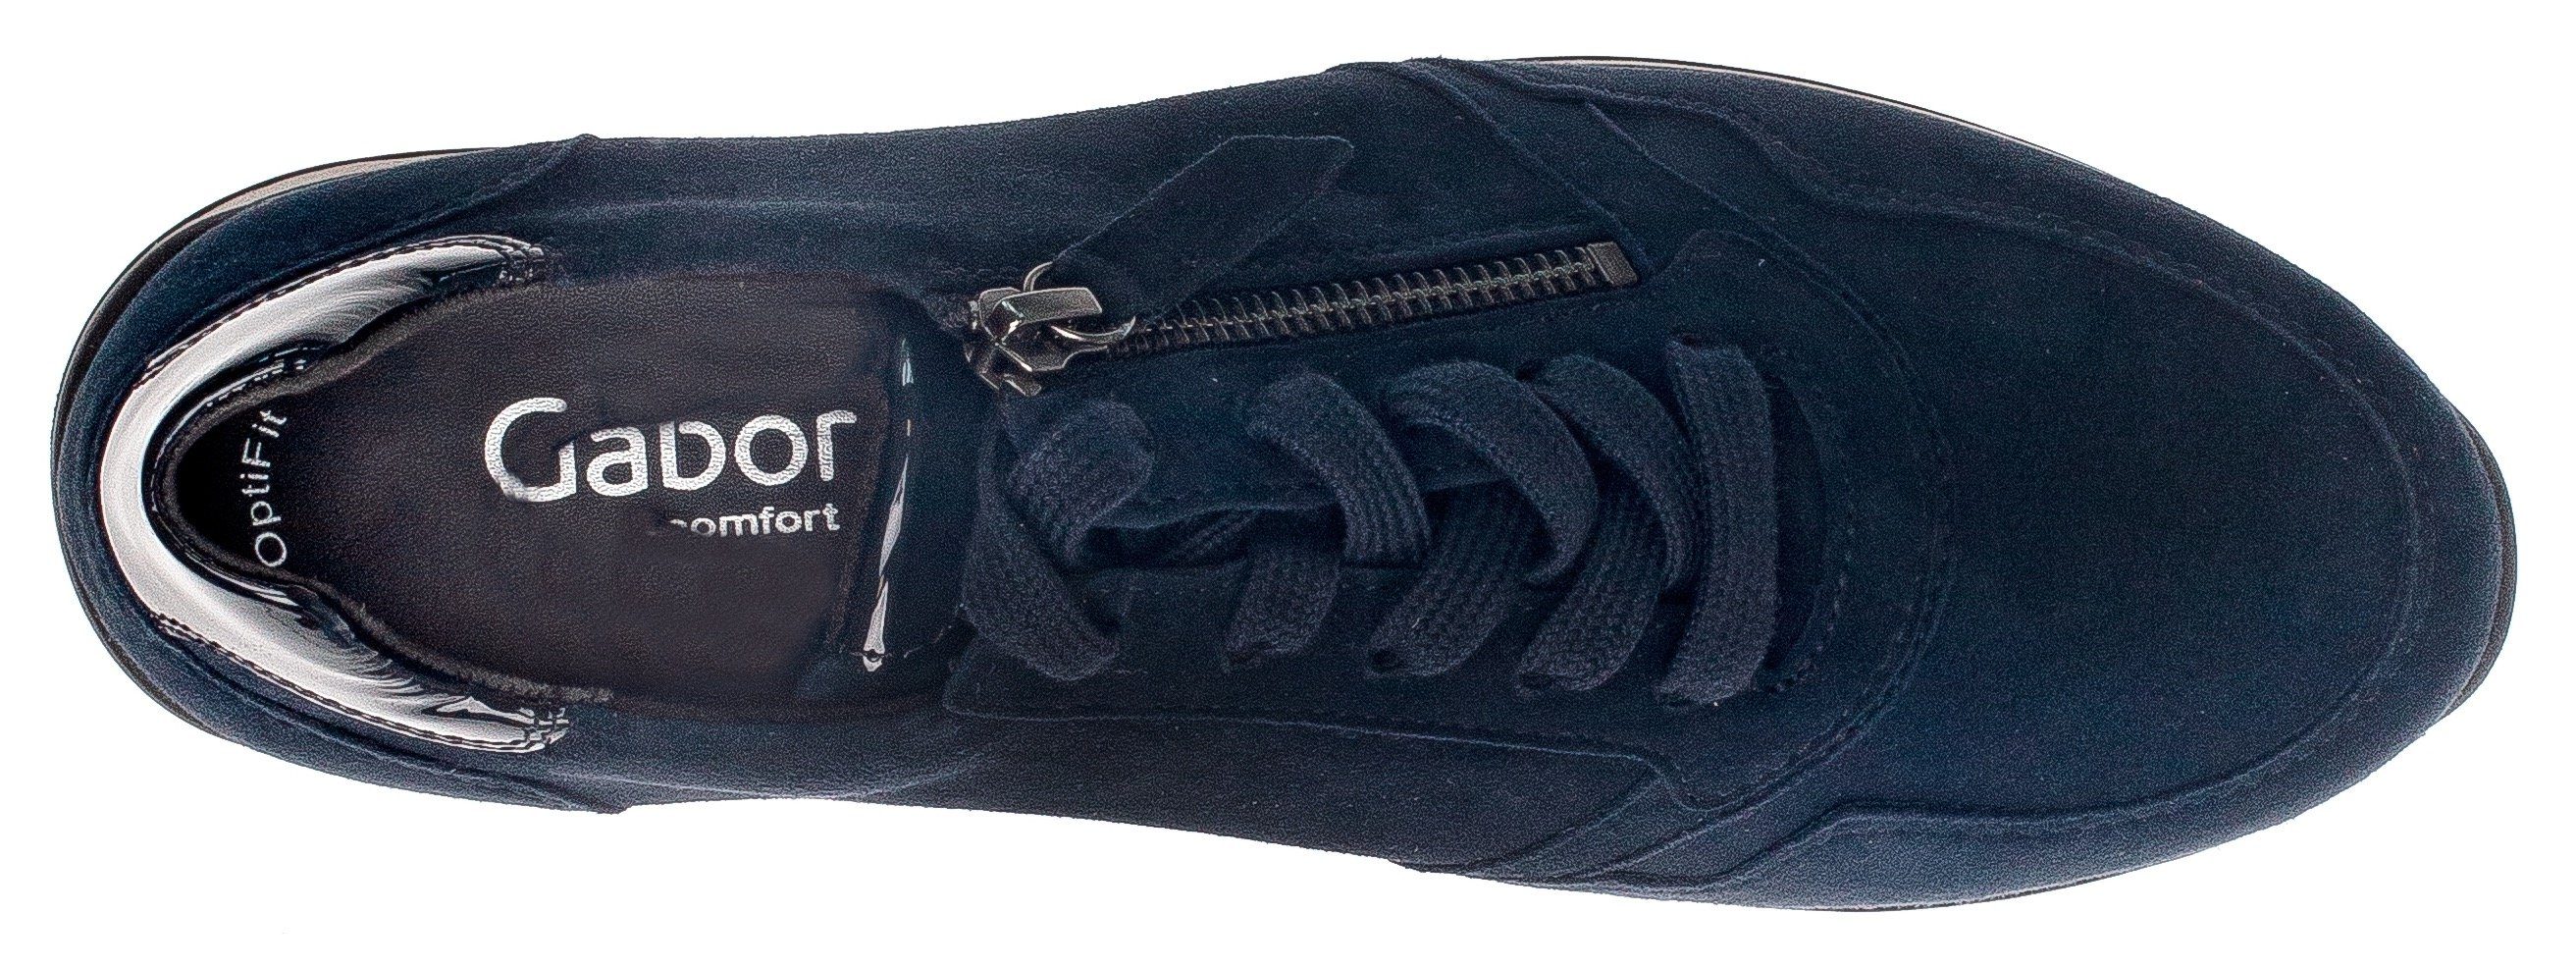 Gabor Turin Keilsneaker mit H-Weite gepolstertem Schaftrand, Blau (dark-blue)